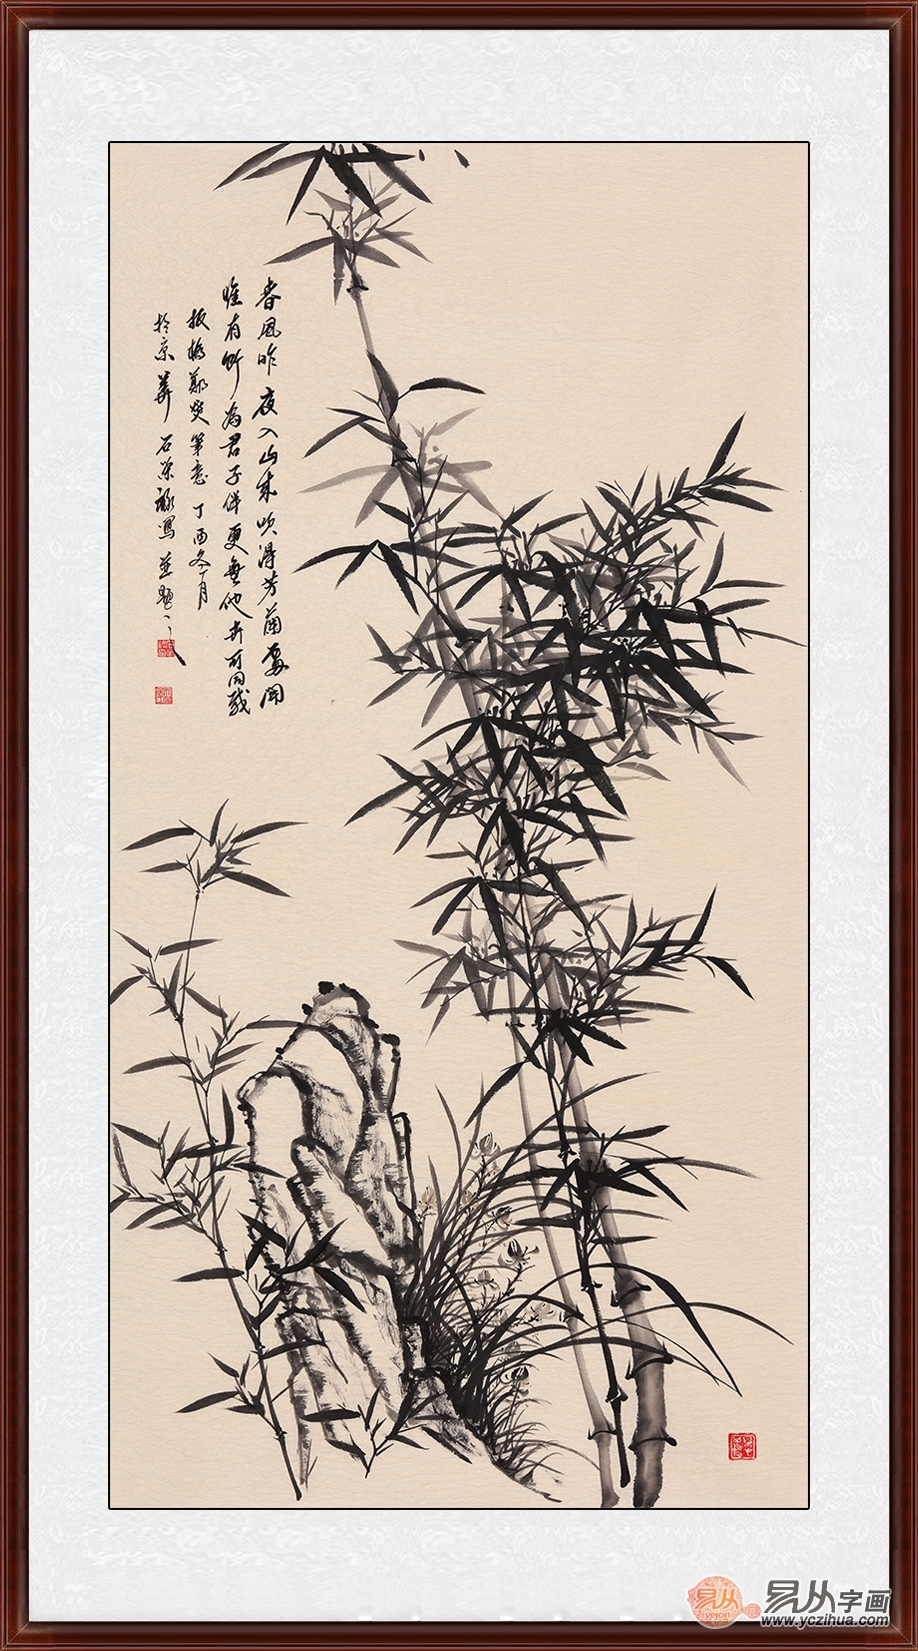 石荣禄画的竹子图值多少钱,有收藏价值吗?